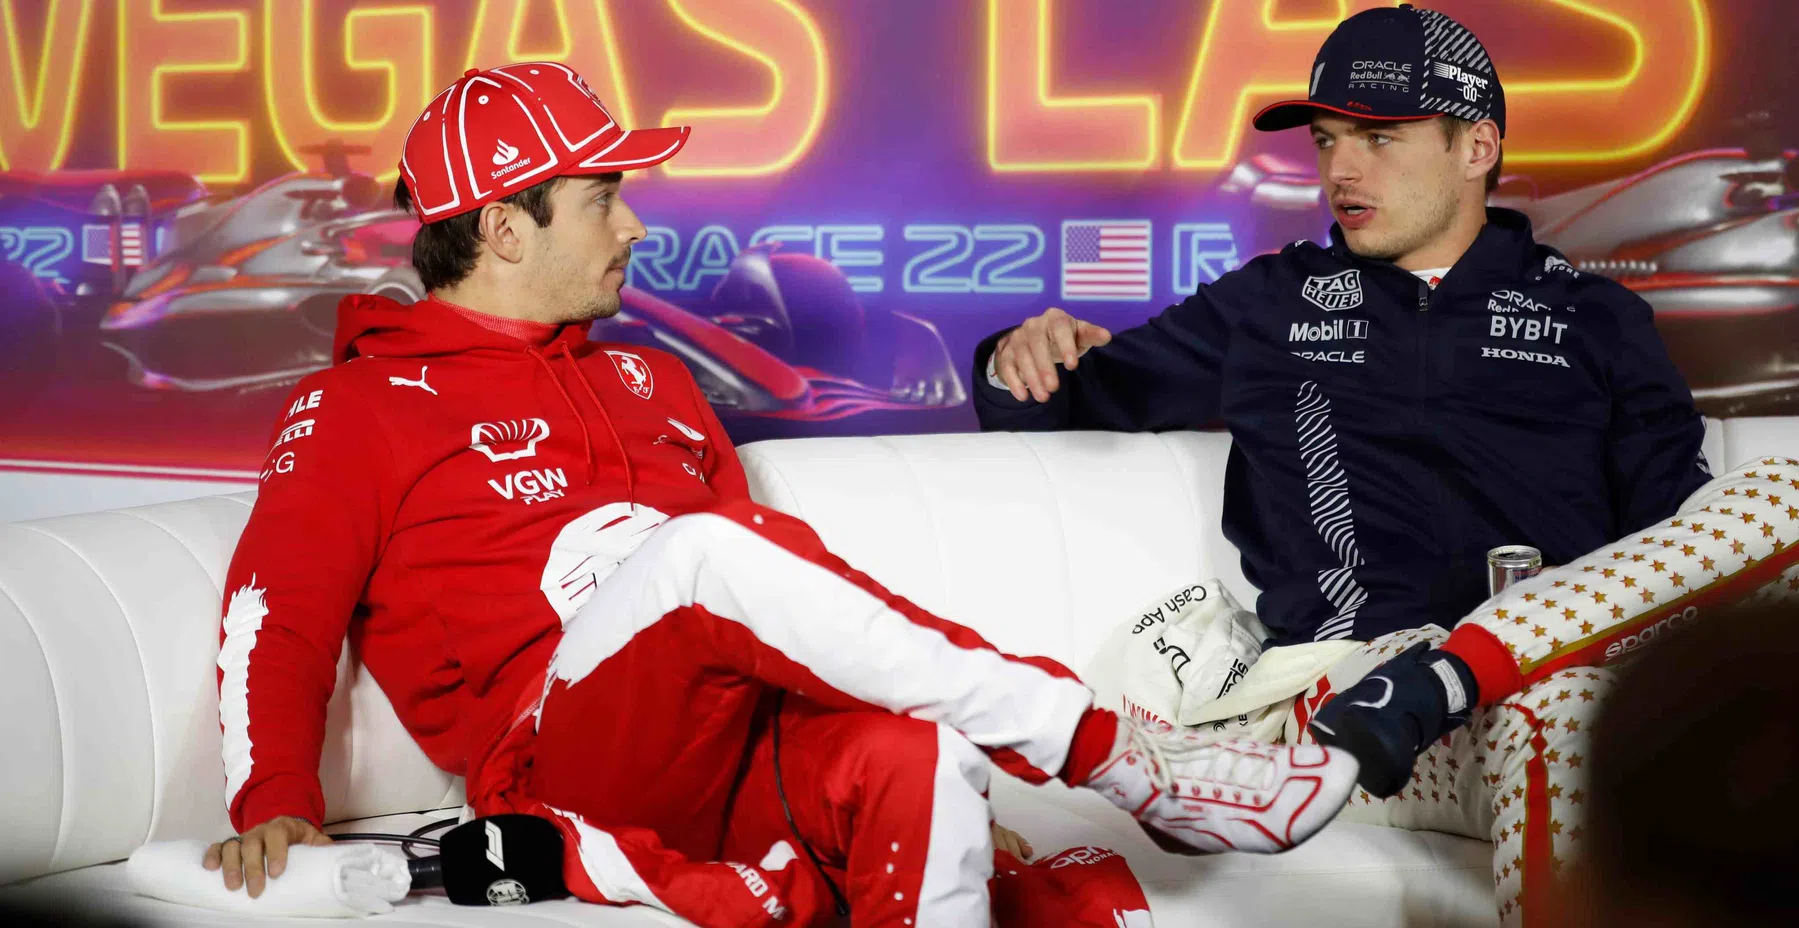 Verstappen si unisce ai piloti di F1 nella conferenza stampa del GP Abu Dhabi